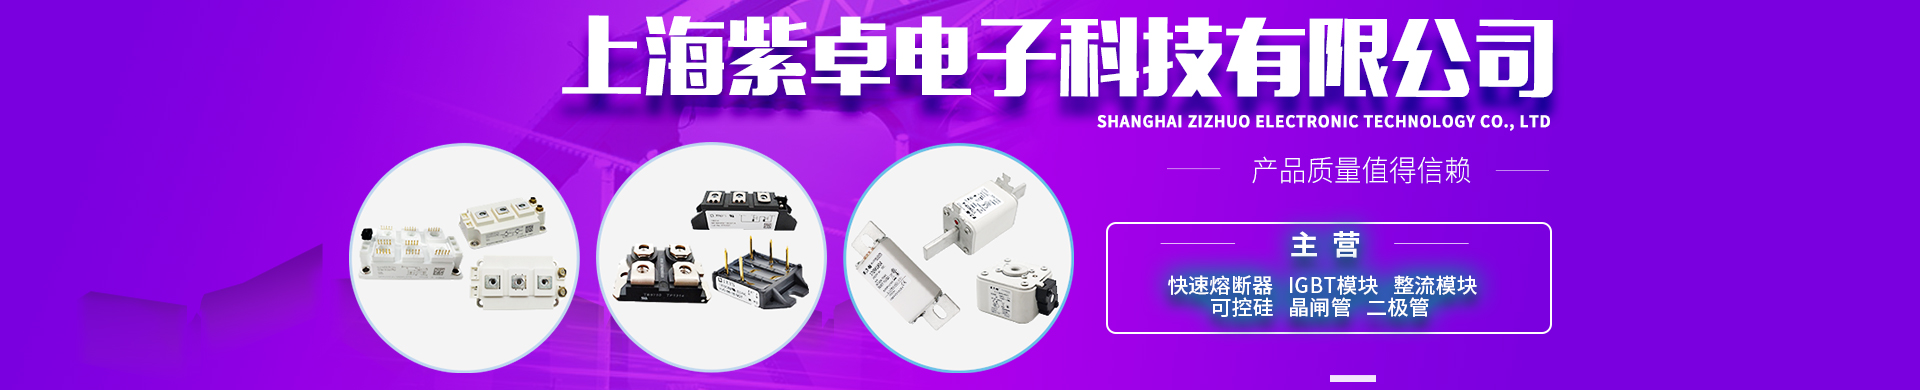 上海紫卓电子科技有限公司